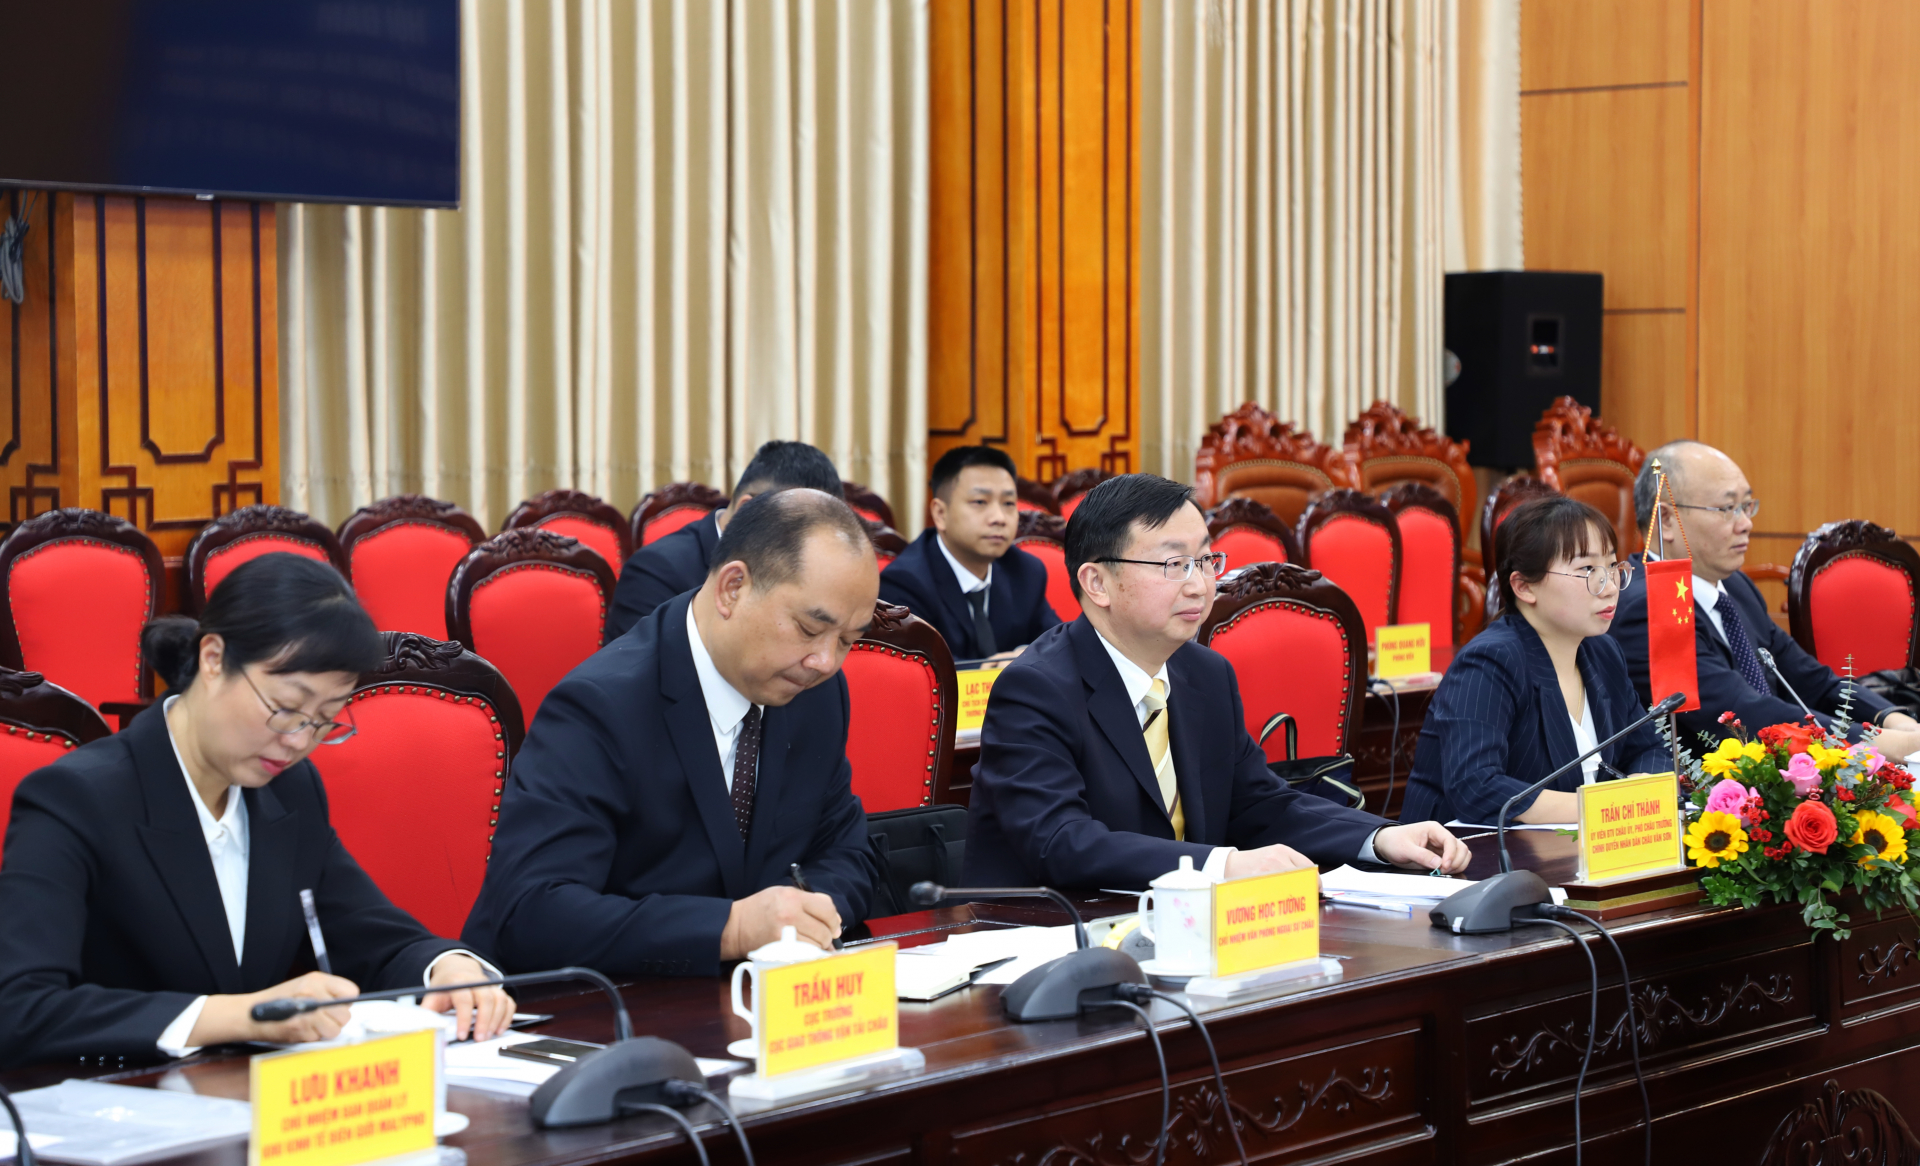 Phó Châu trưởng Chính quyền nhân dân châu Văn Sơn Trần Chí Thành và các đại biểu dự hội đàm.